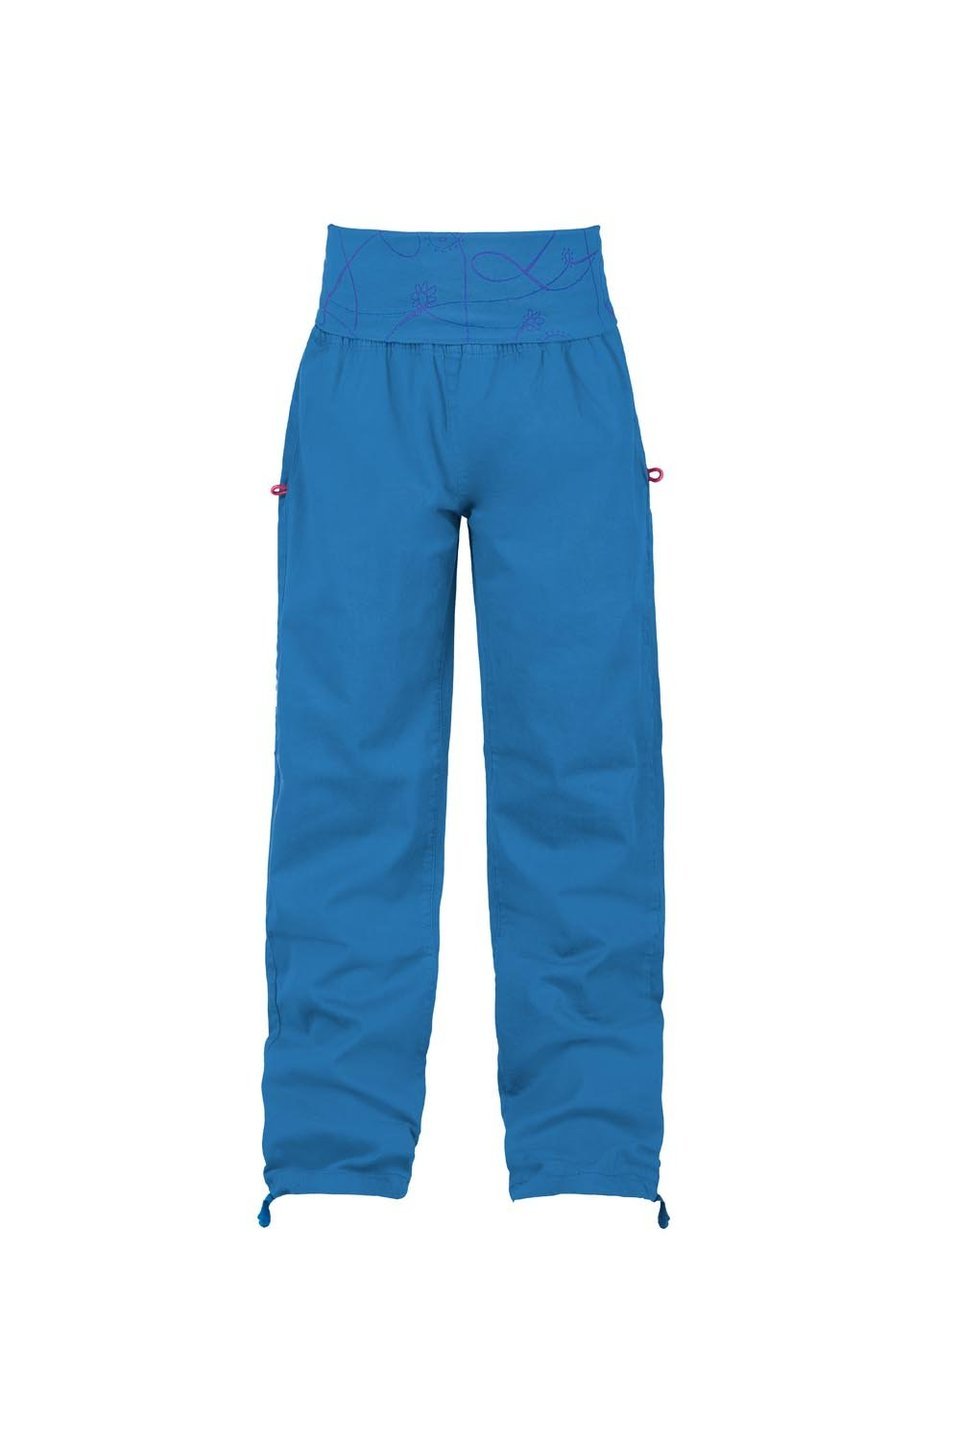 E9 Enove Giada - Pantaloni in gabardina elasticizzata leggera con cinturino in jersey COBALT BLUE